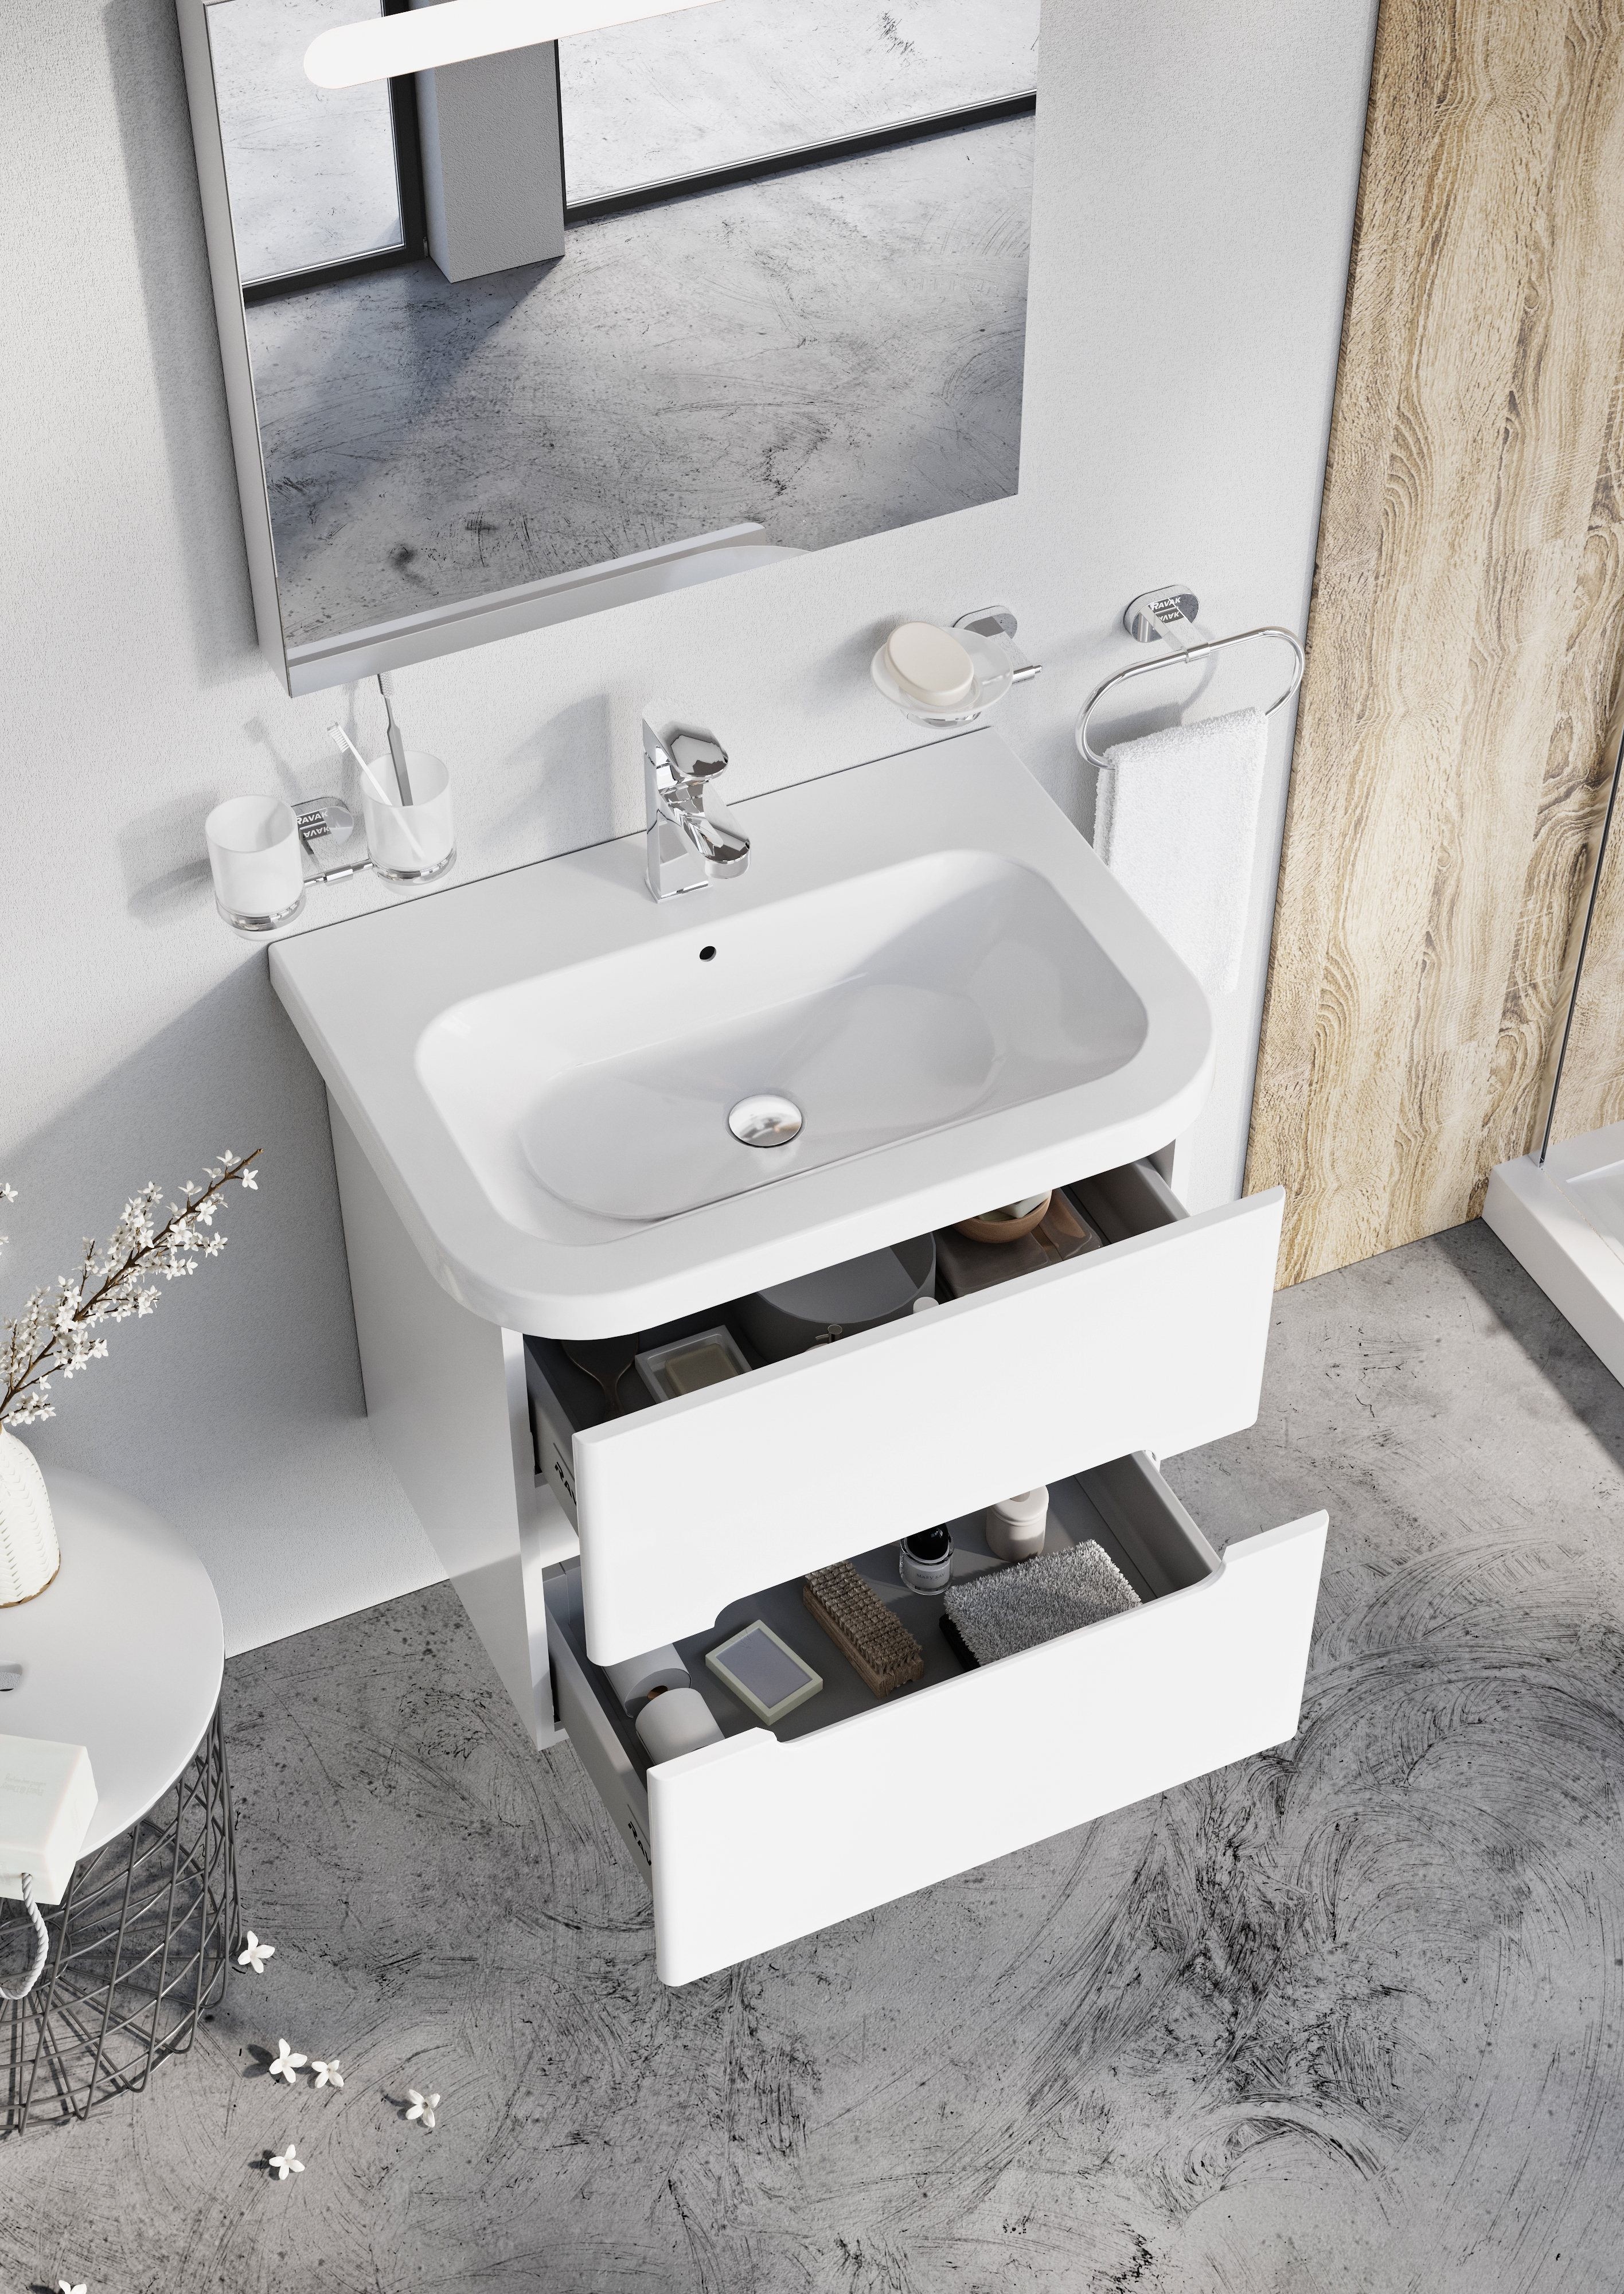 A Chrome fürdőszobaszekrény kihúzható fiókjai tágasak, mélyek és jól pakolhatók.